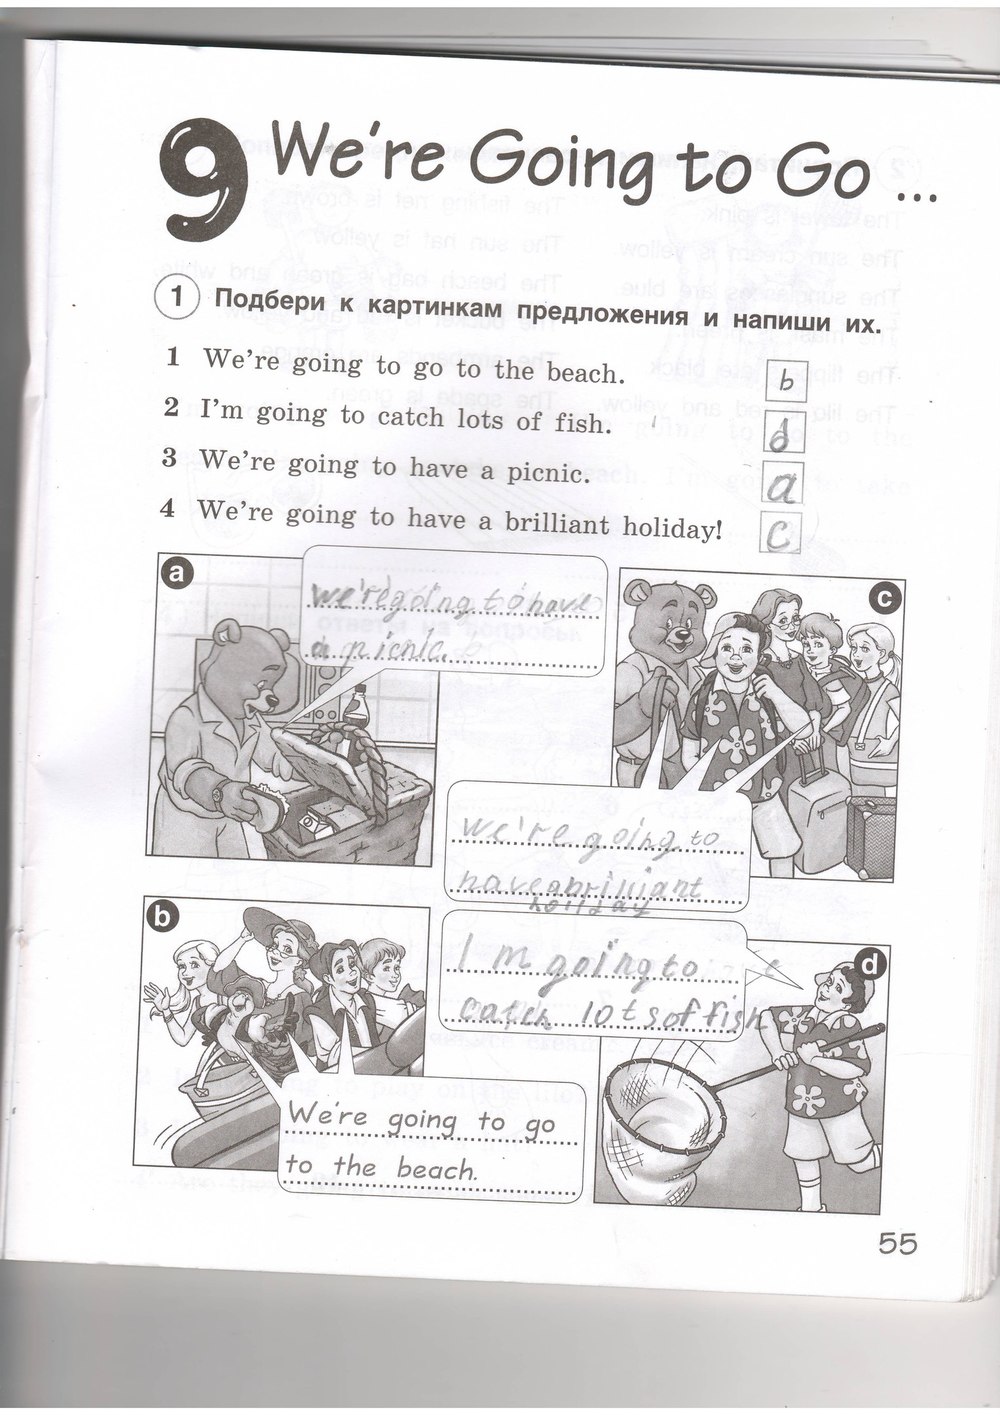 гдз 4 класс рабочая тетрадь страница 55 английский язык Комарова, Ларионова